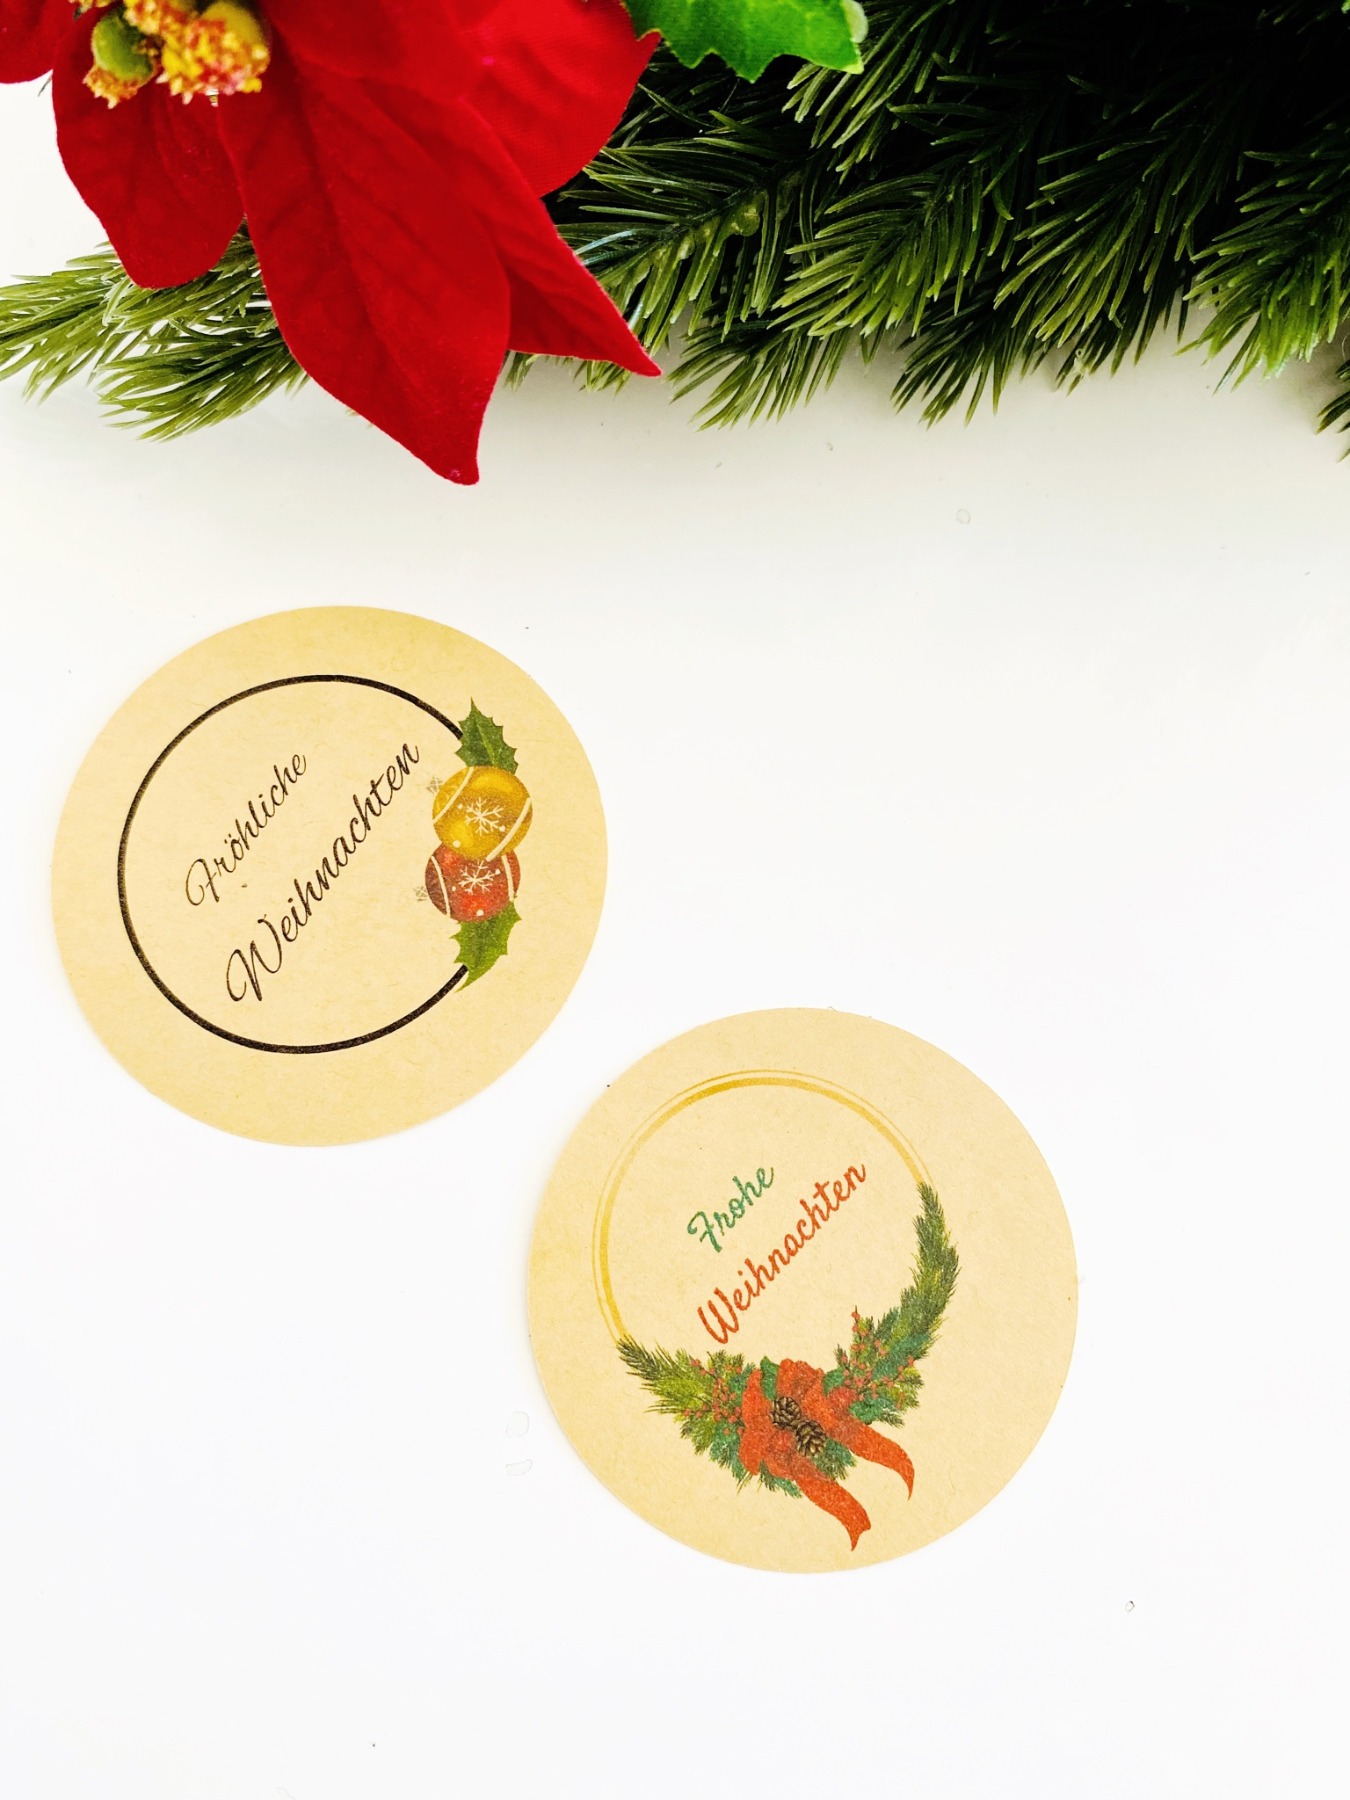 Bastelset für Weihnachten DIY Kit Weihnachtskarten basteln Weihnachtsgeschenke verpacken Ideen 2